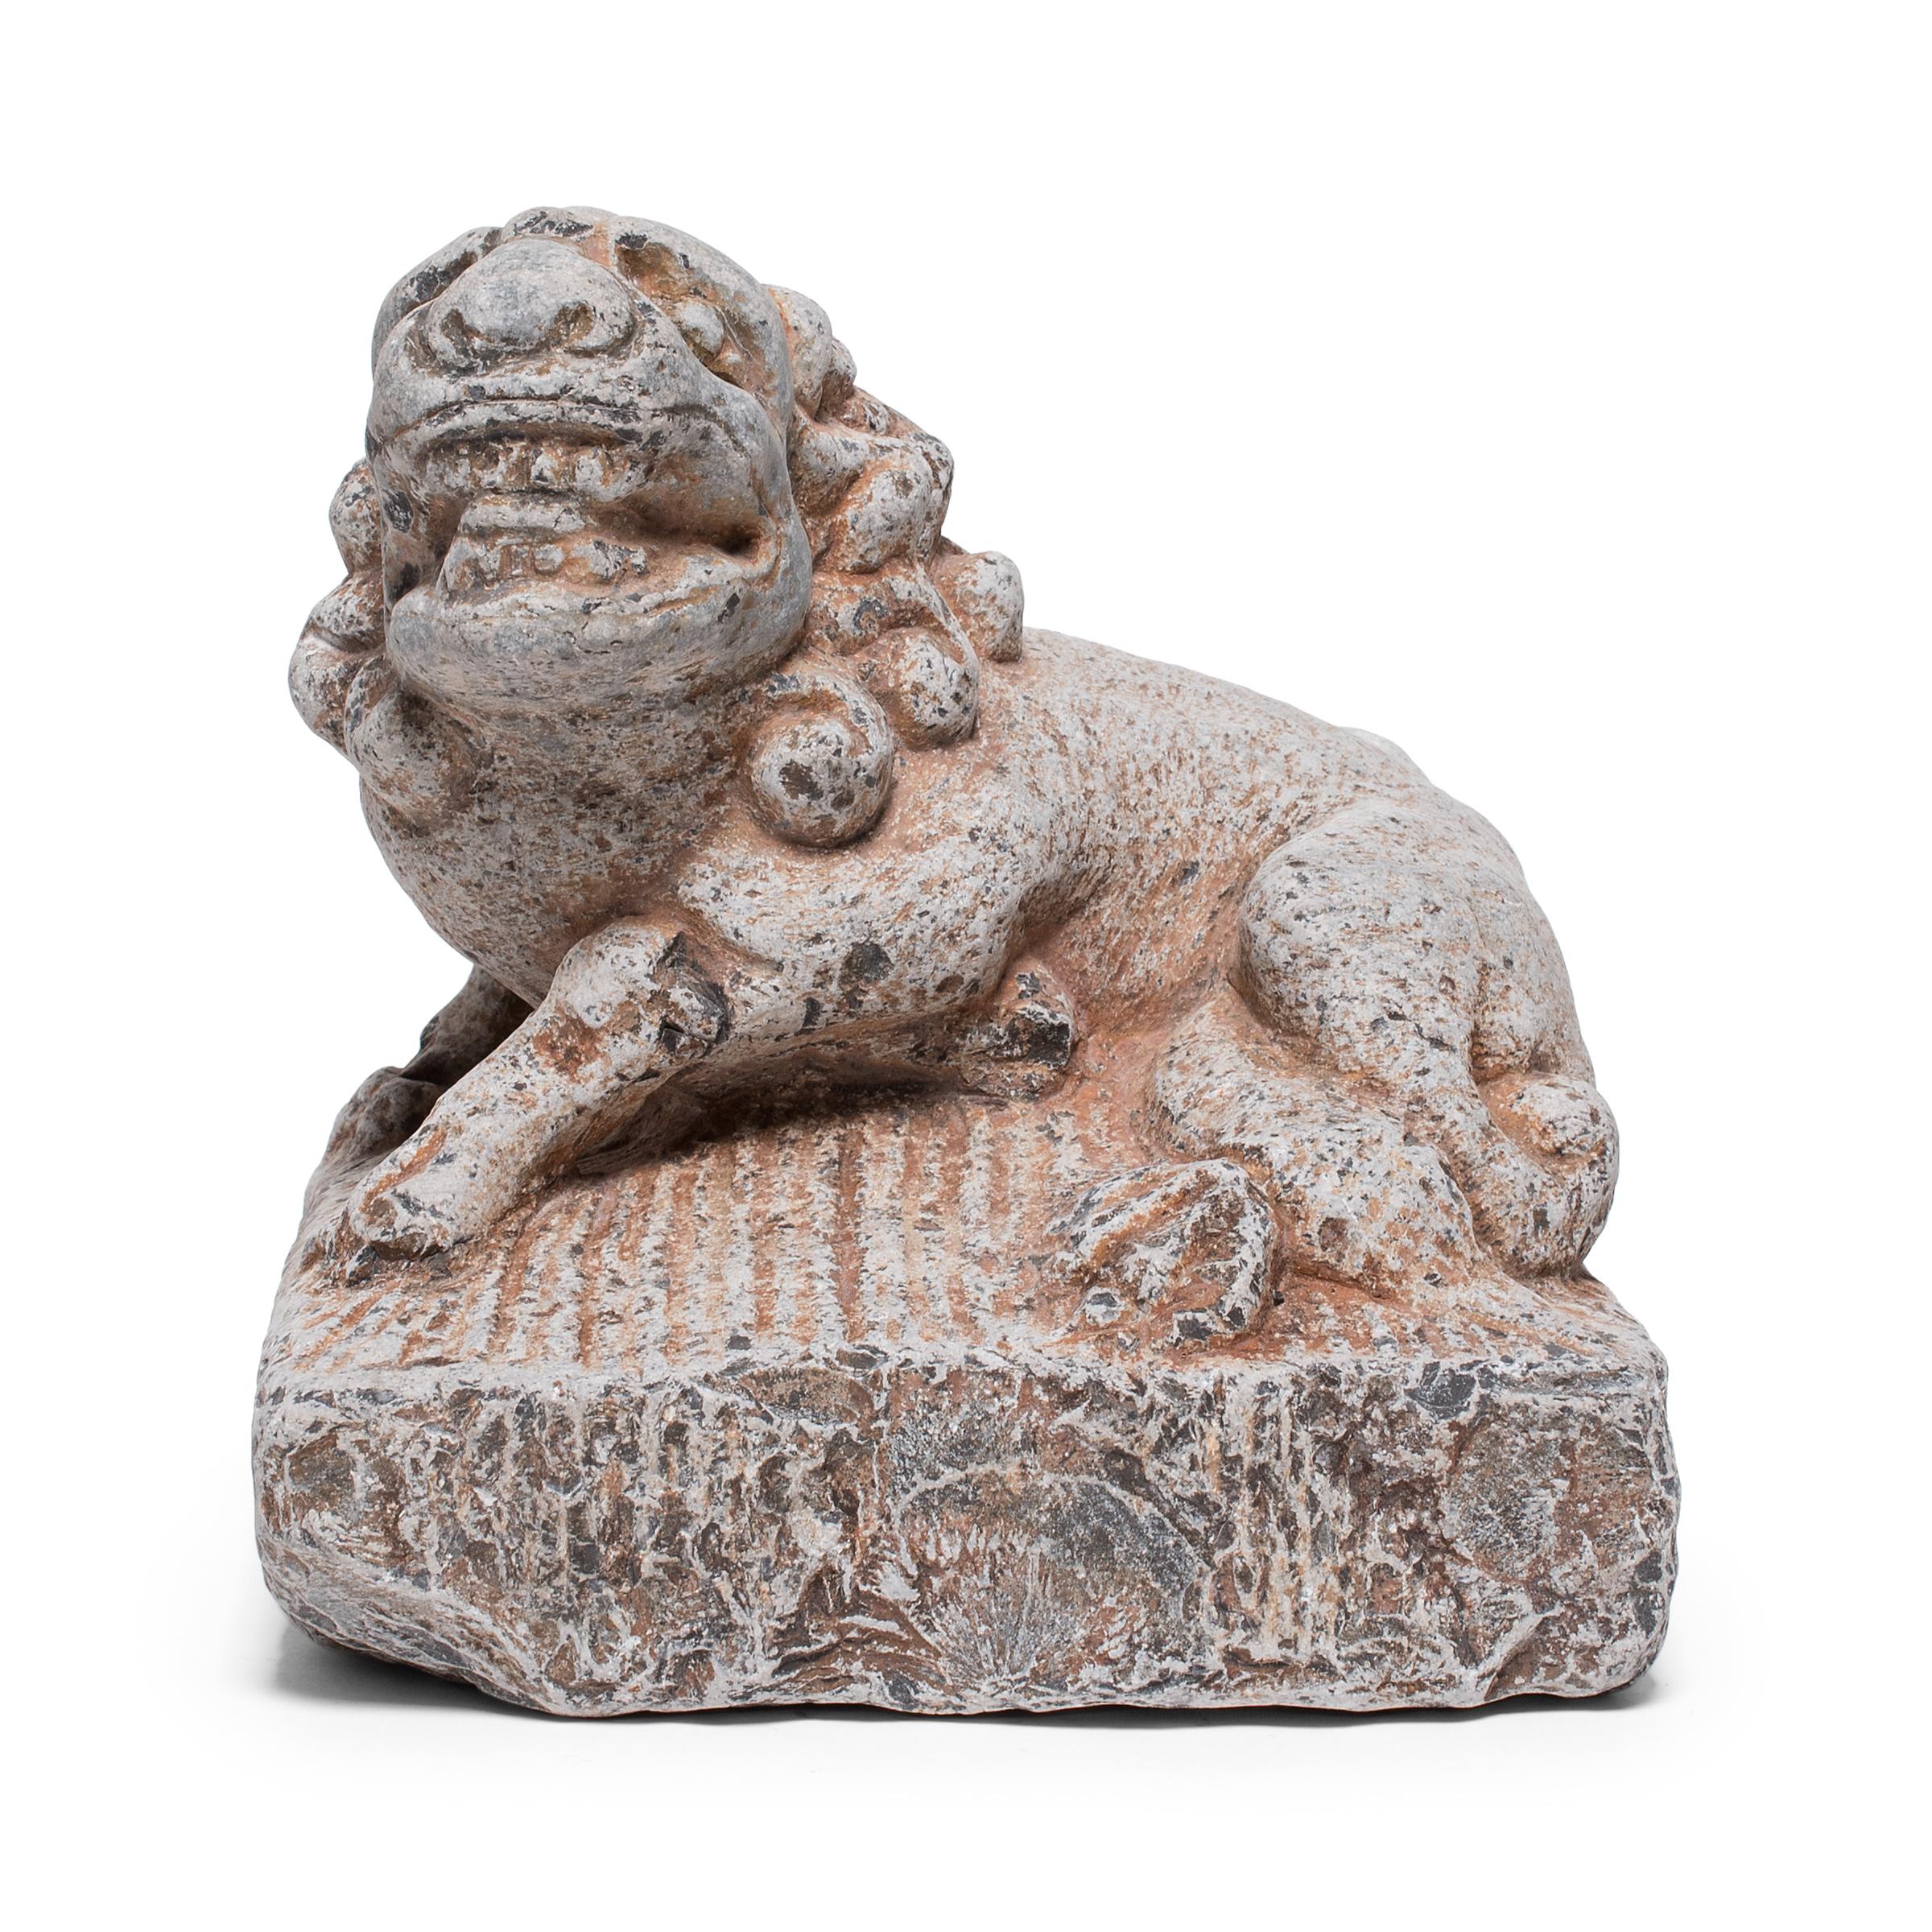 Diese aus einem einzigen Kalksteinblock handgeschnitzte Steinskulptur stellt einen liegenden mythischen Fu-Hund-Löwen dar. Fu-Löwen wie dieser, auch als Shizi bekannt, wurden traditionell neben dem Eingang oder der Schwelle eines großen Hauses oder